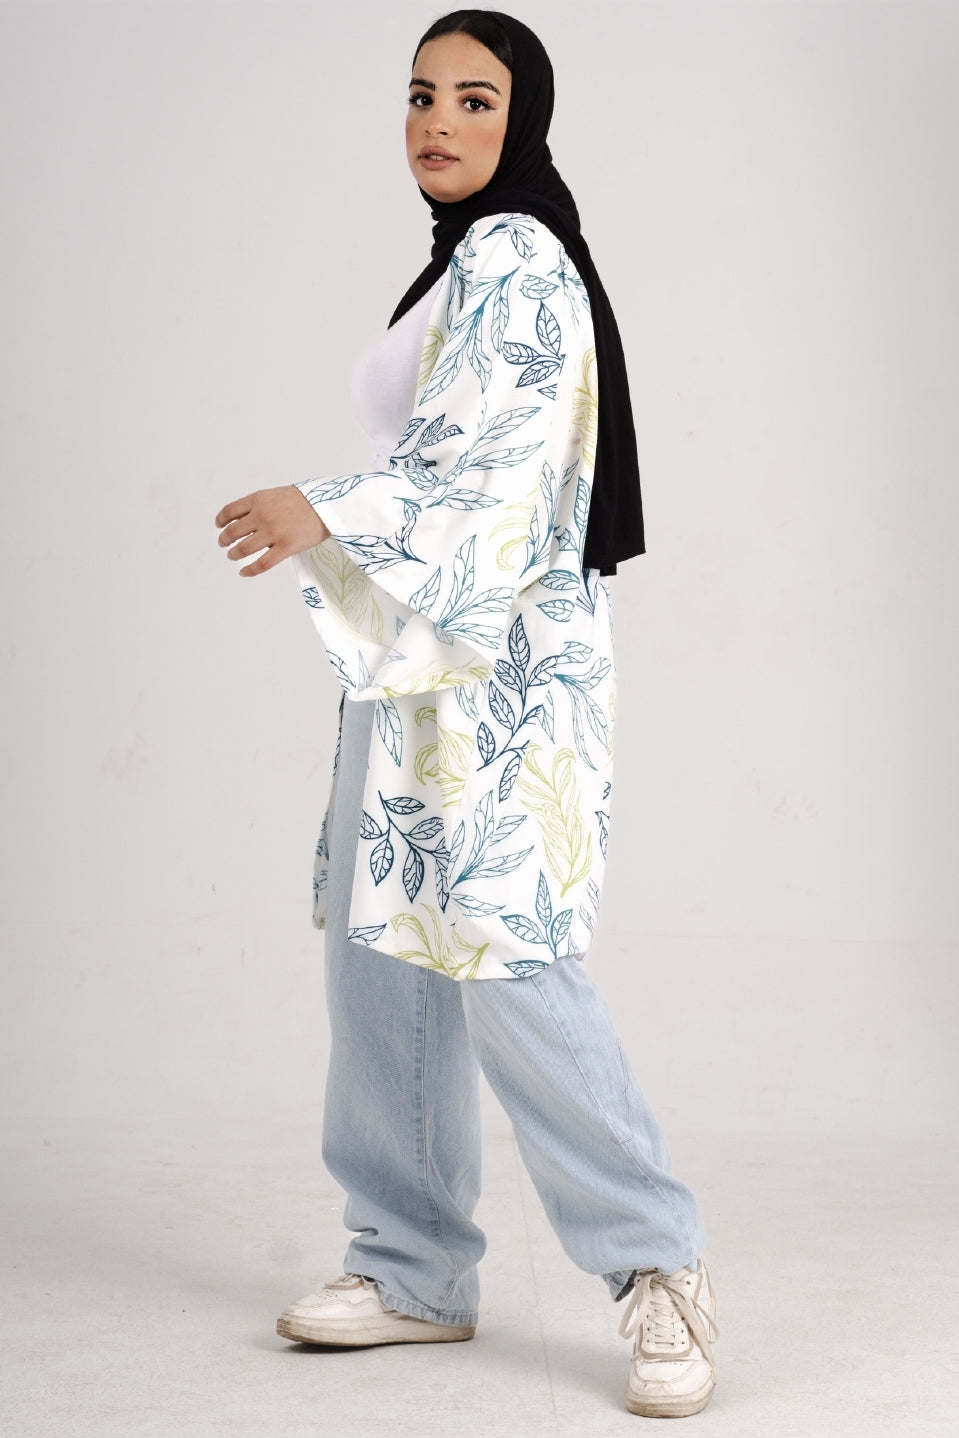 Elegance Reimagined DBK Kimono - White